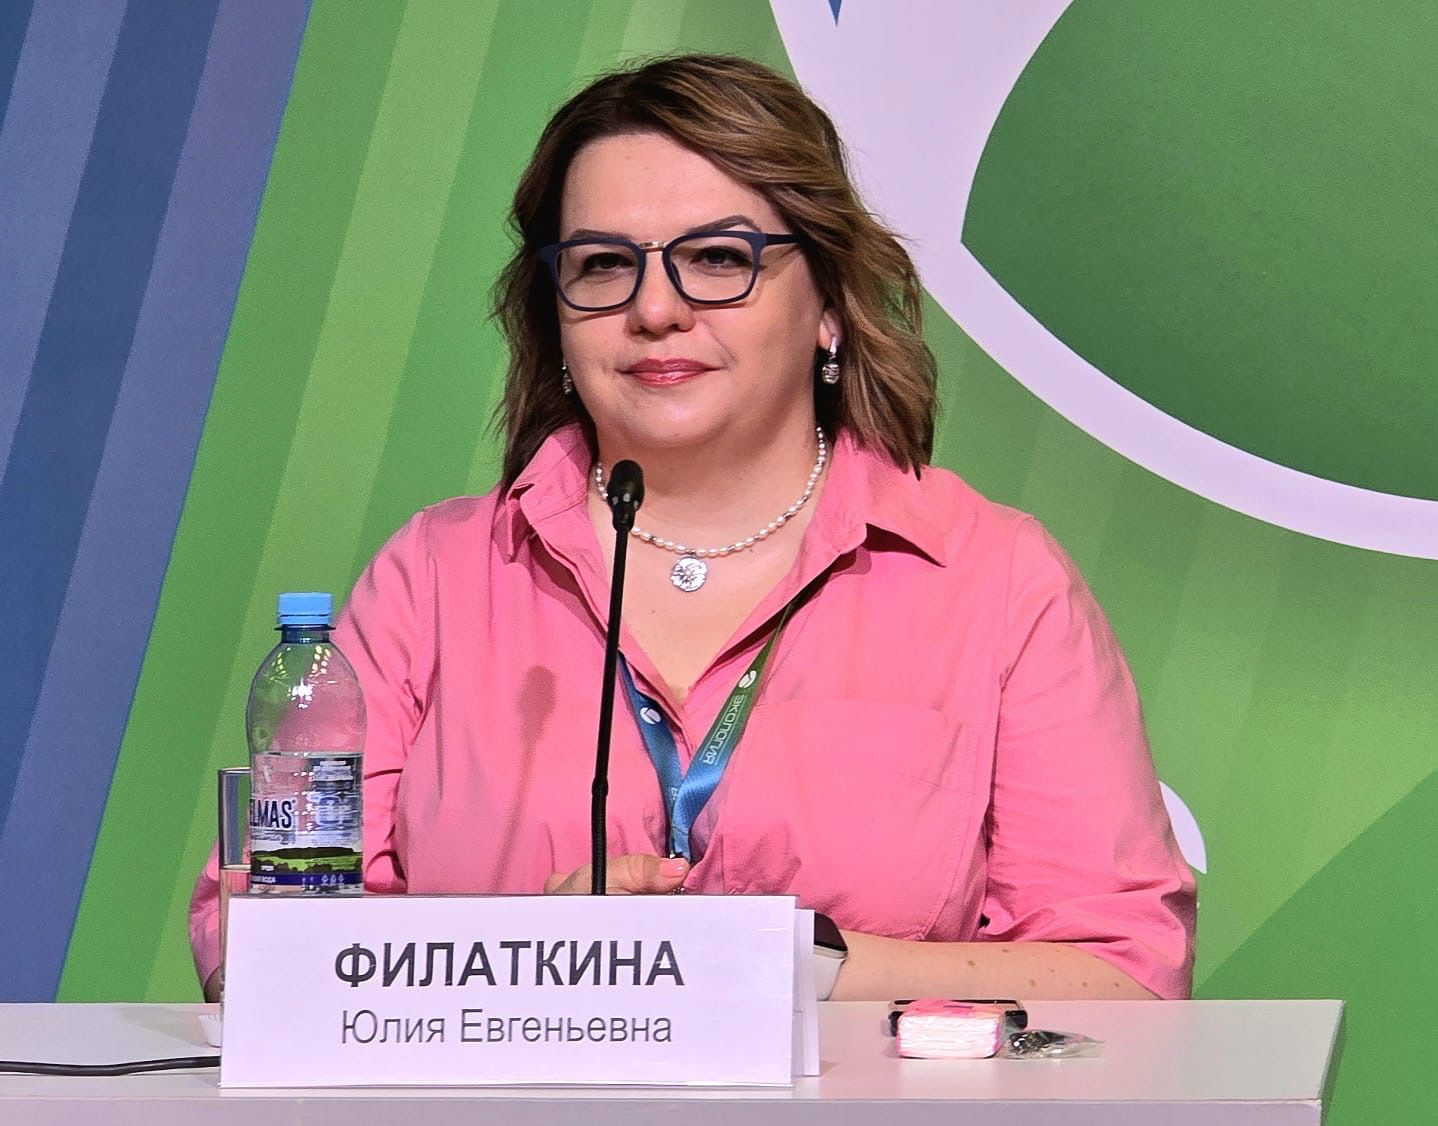 Юлия Филаткина выступила модератором сессии на Международном форуме «Экология»